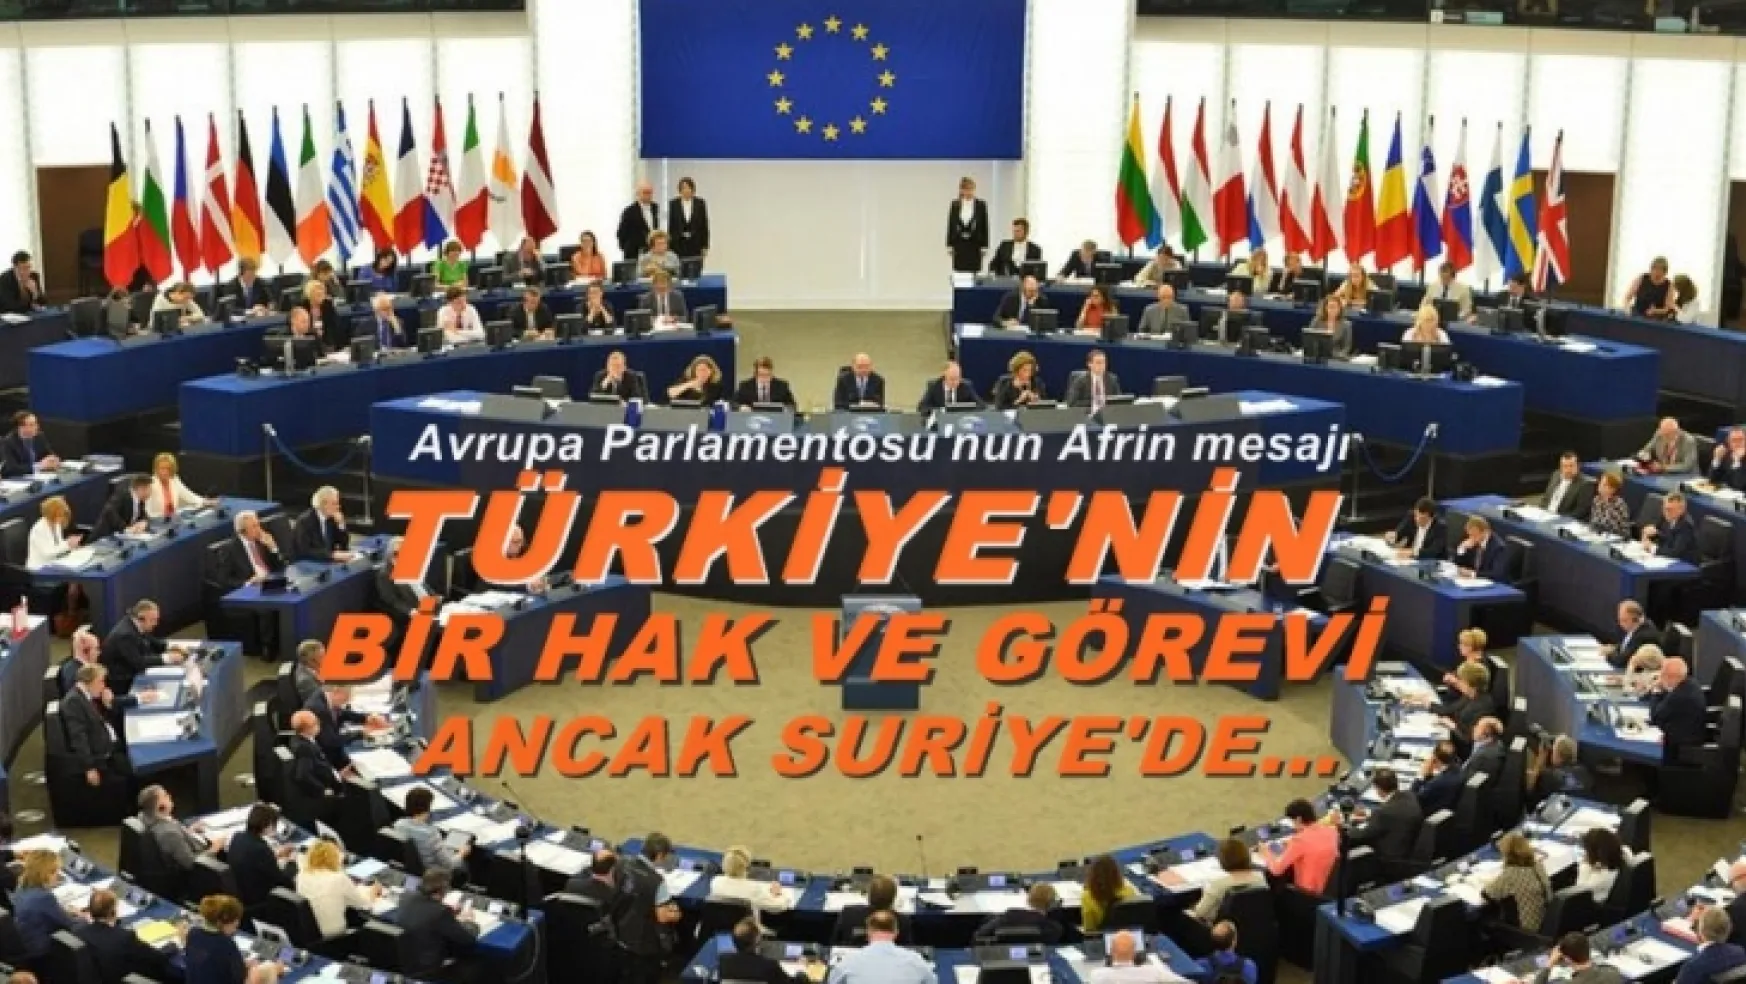 Avrupa Parlamentosu'nun Afrin mesajı